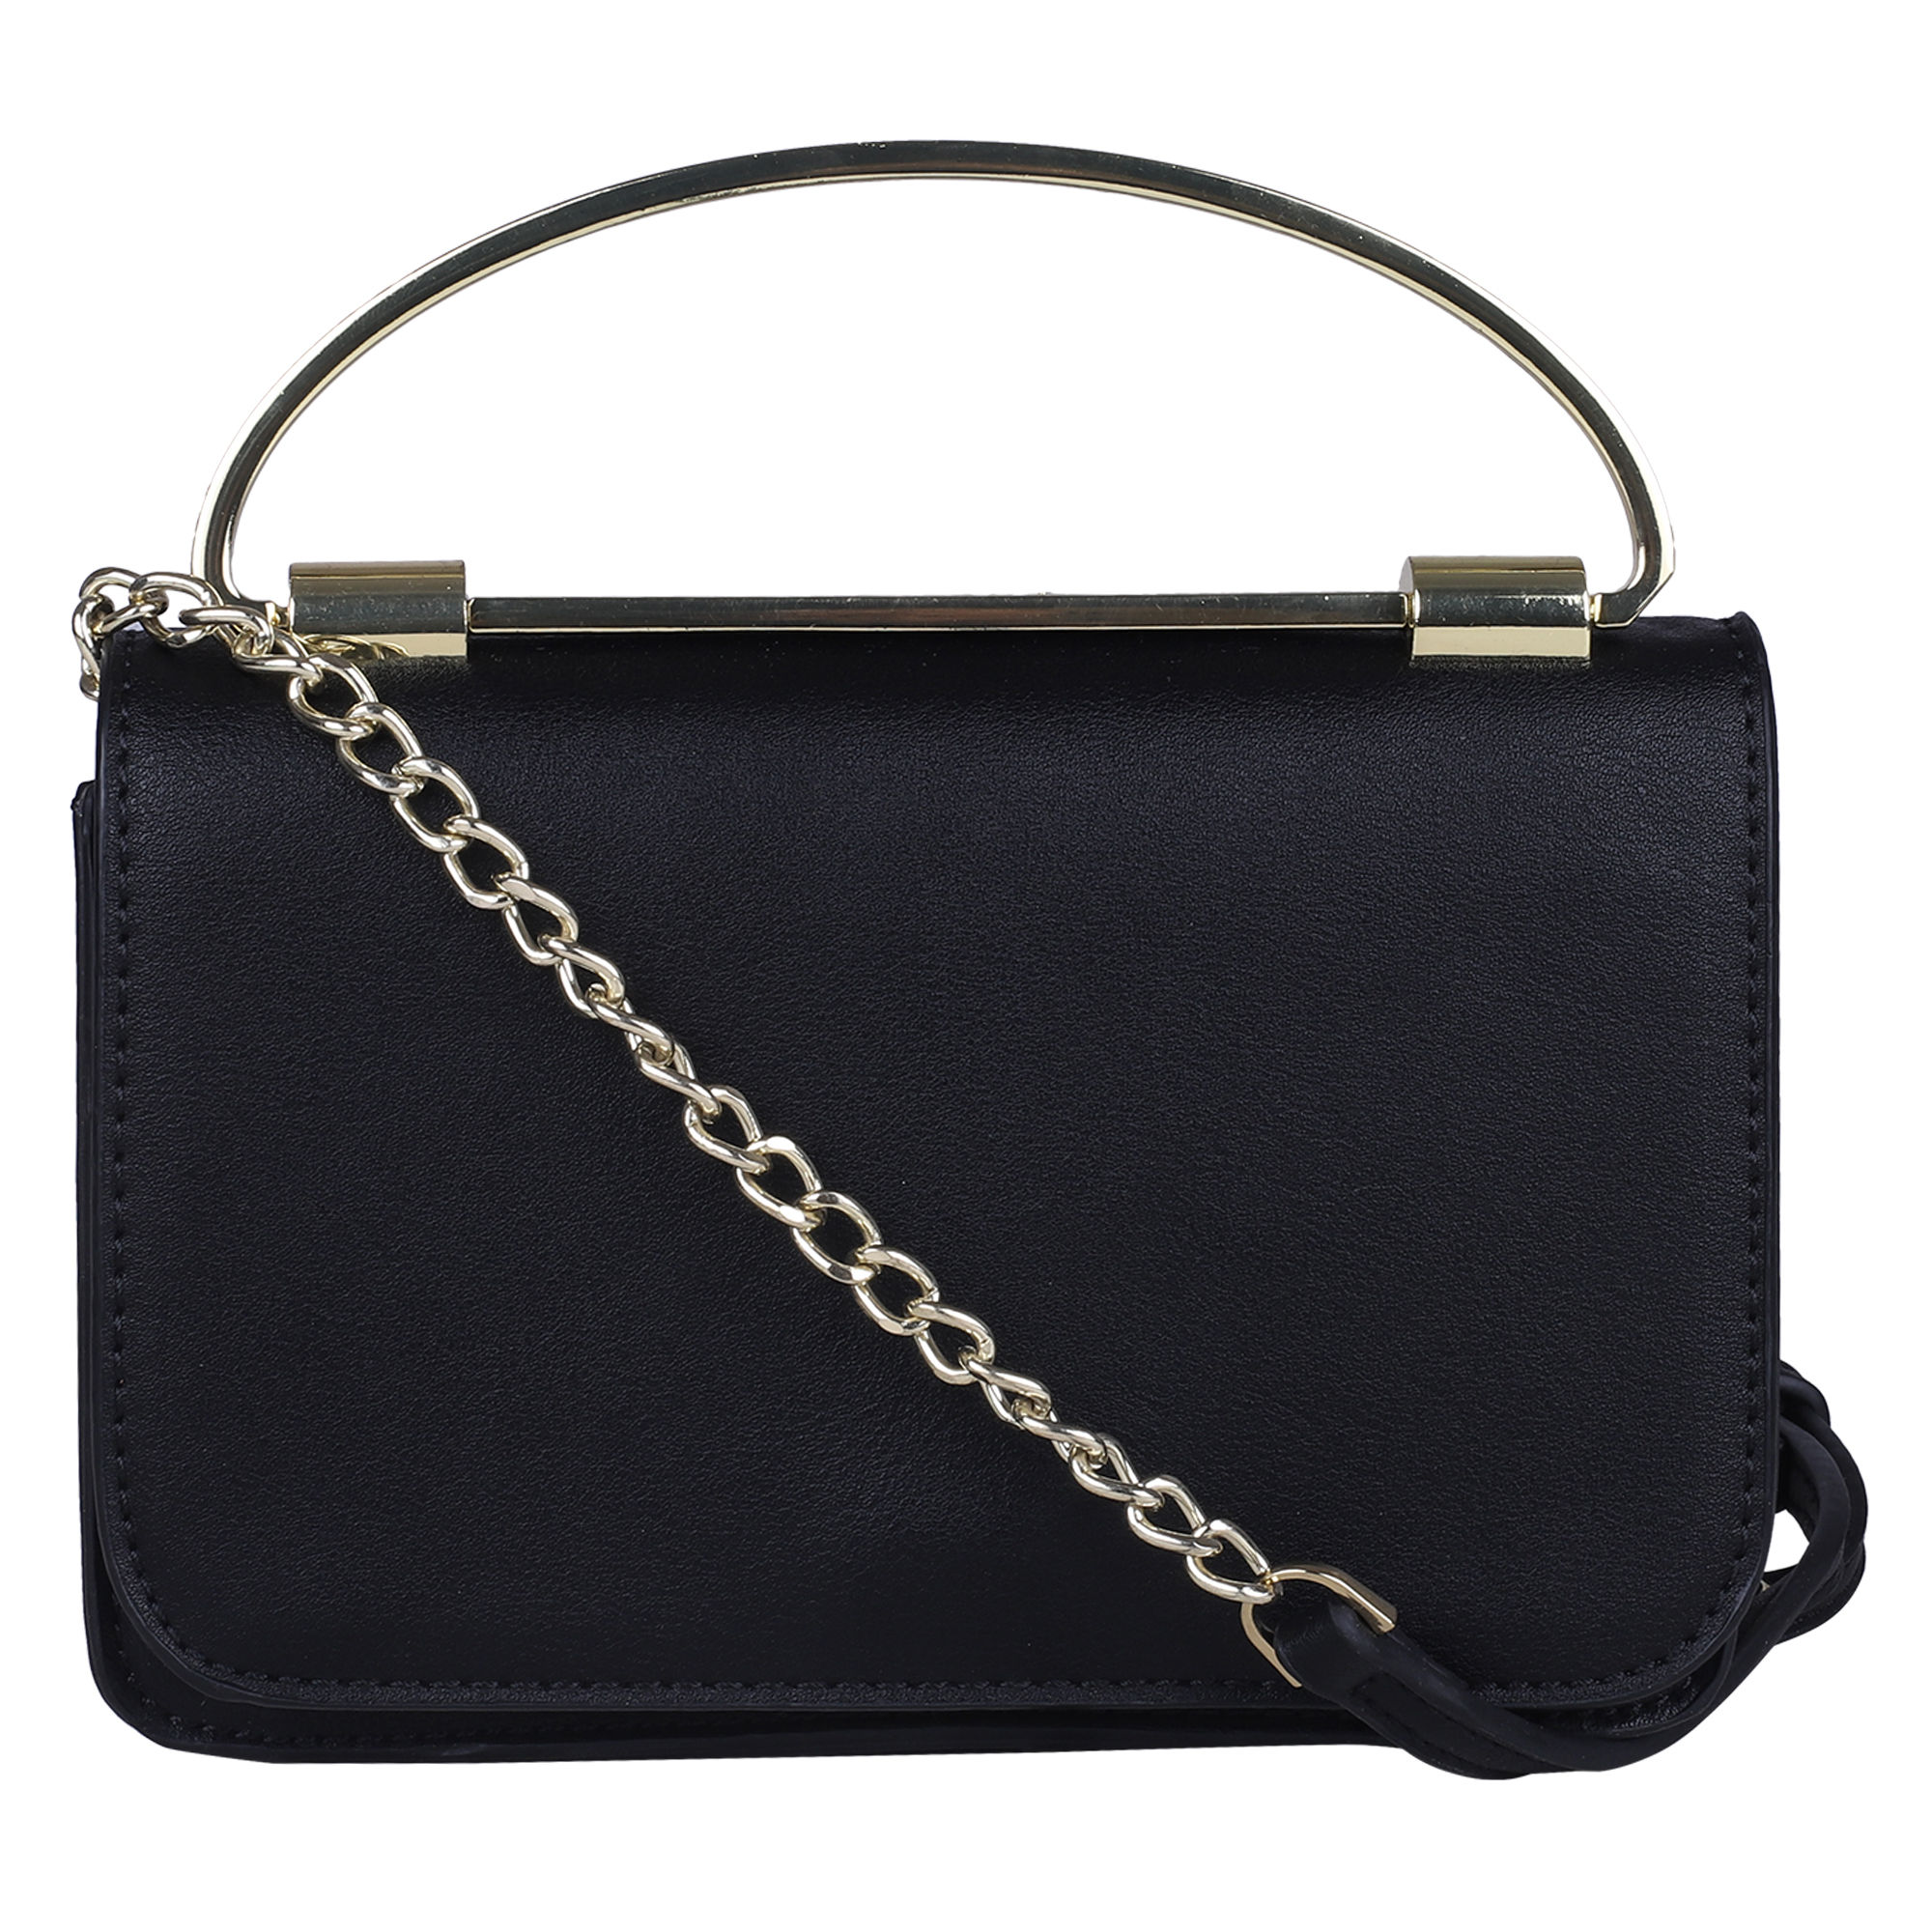 Coronado Sling Bag, Black – Mercury Luggage